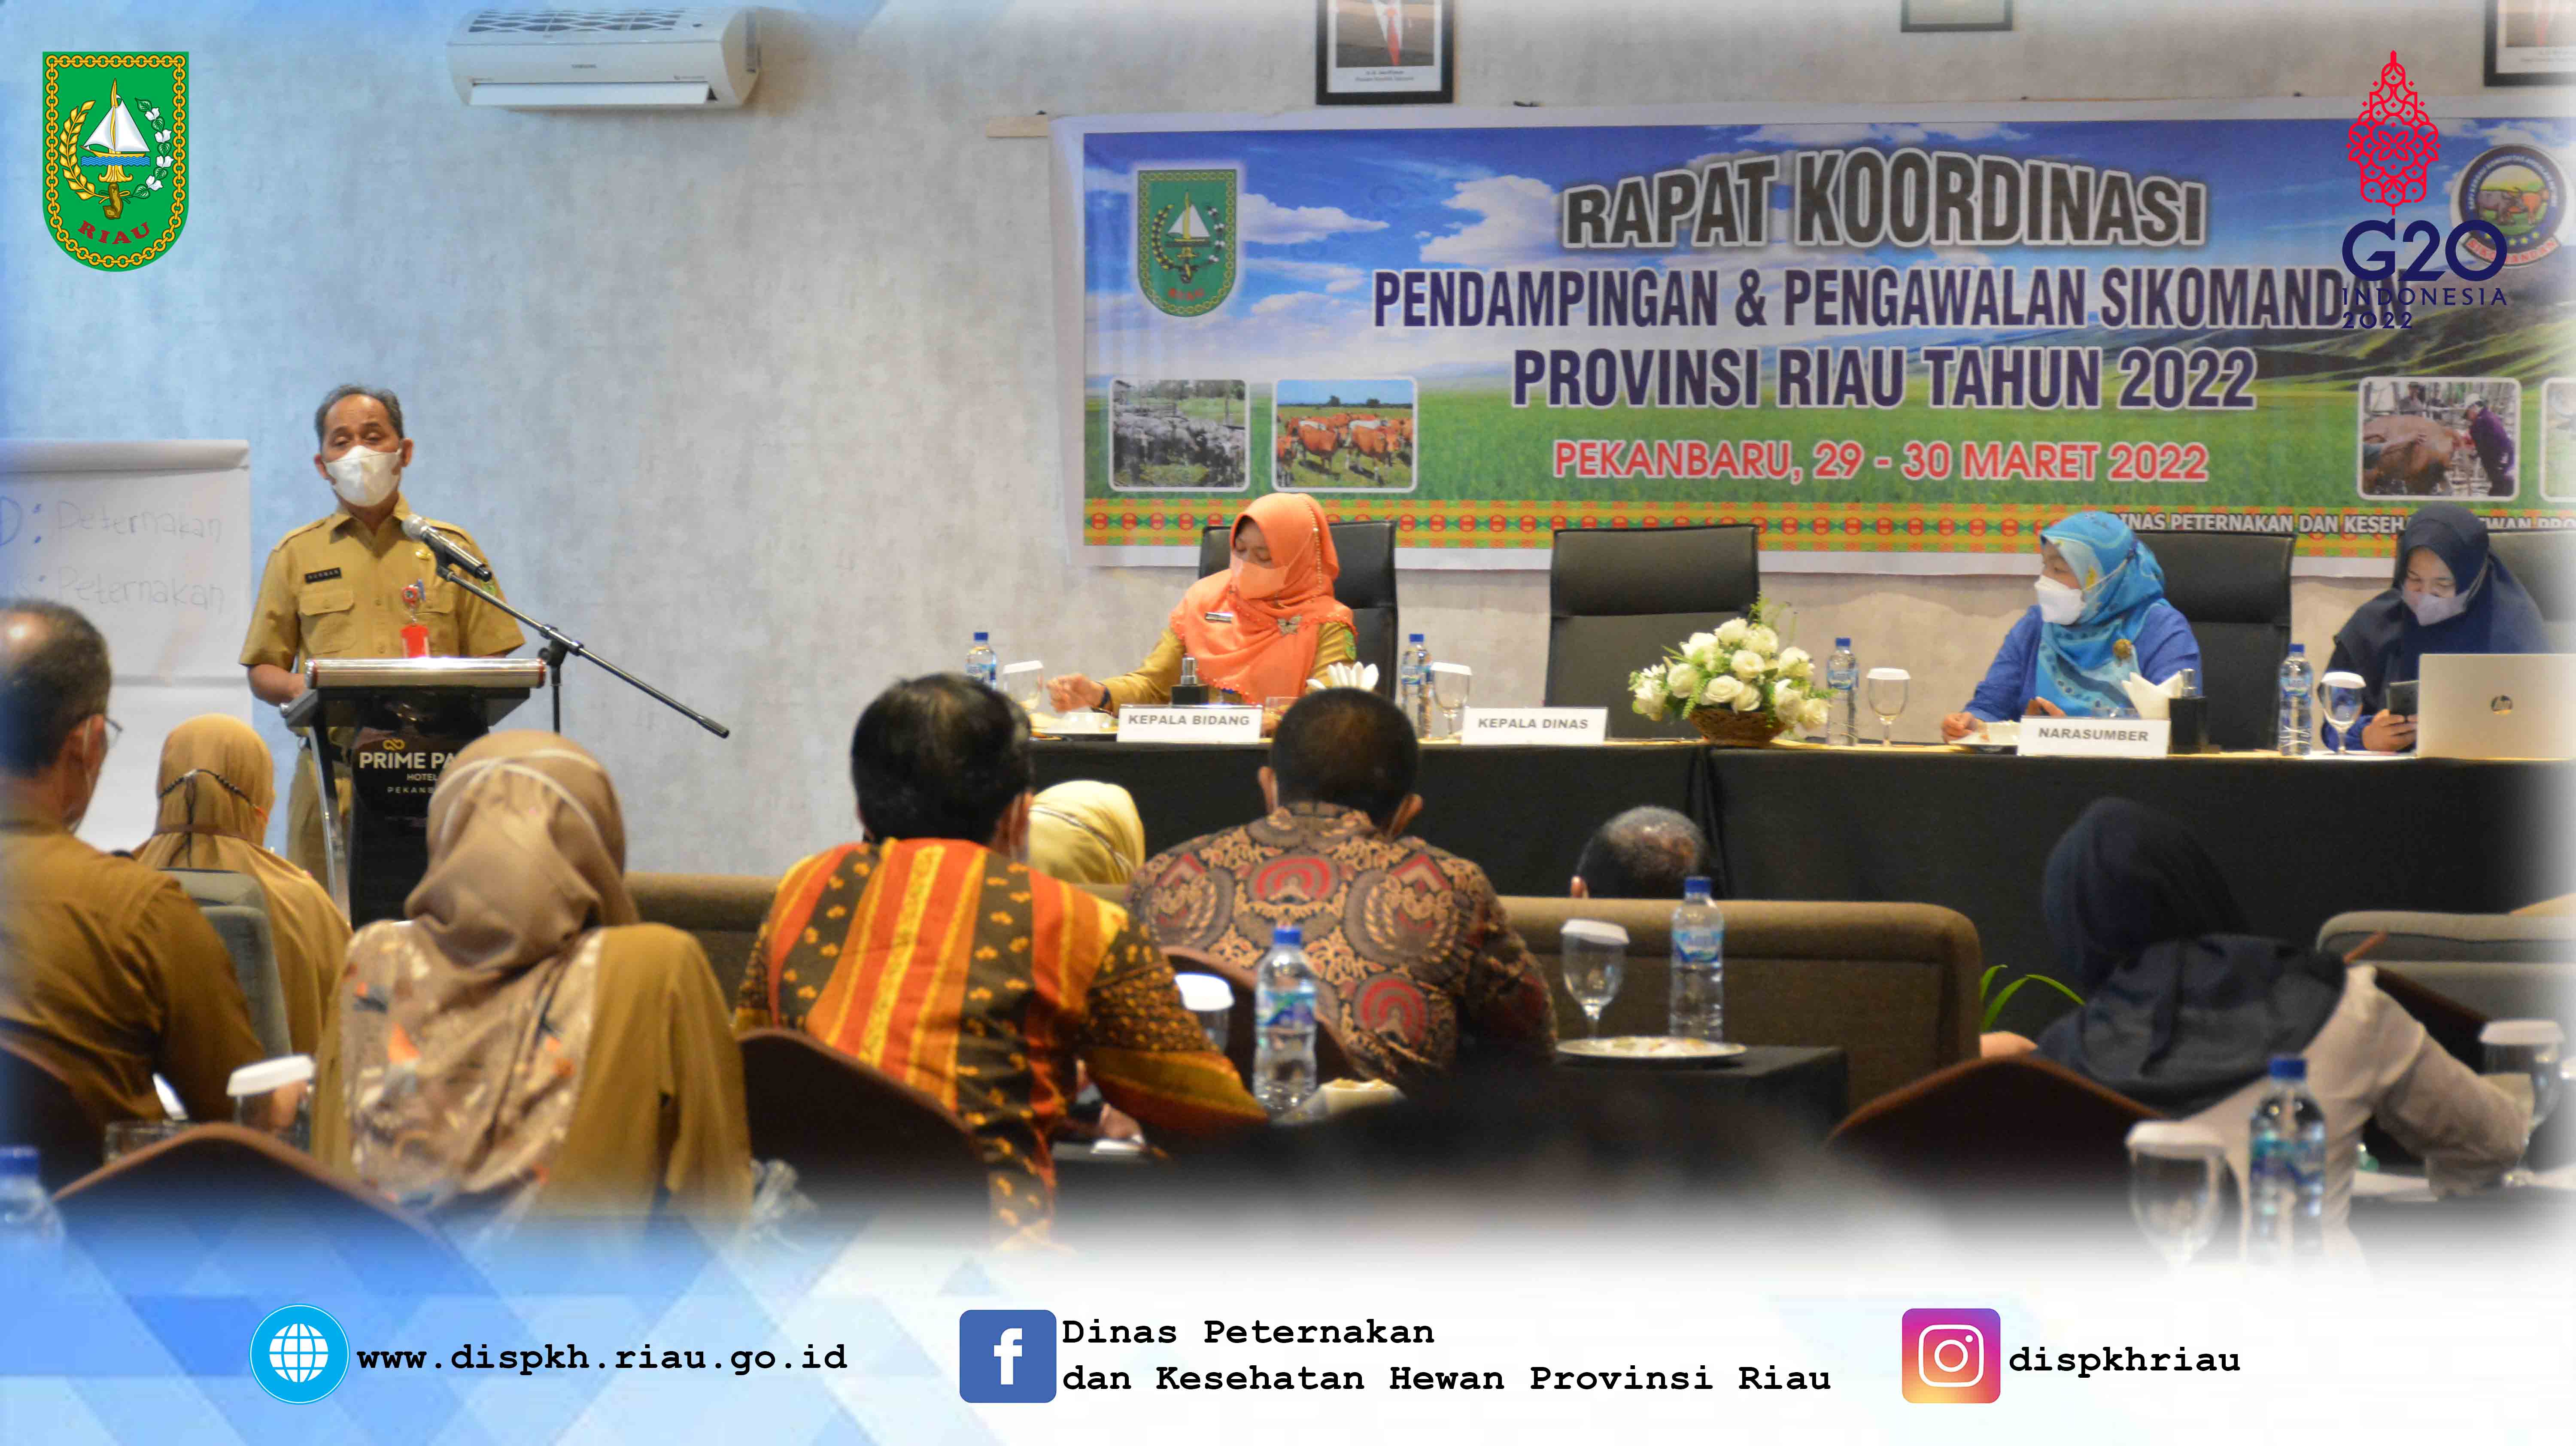 Rapat Koordinasi Pendampingan dan Pengawalan Sikomandan Provinsi Riau Tahun 2022